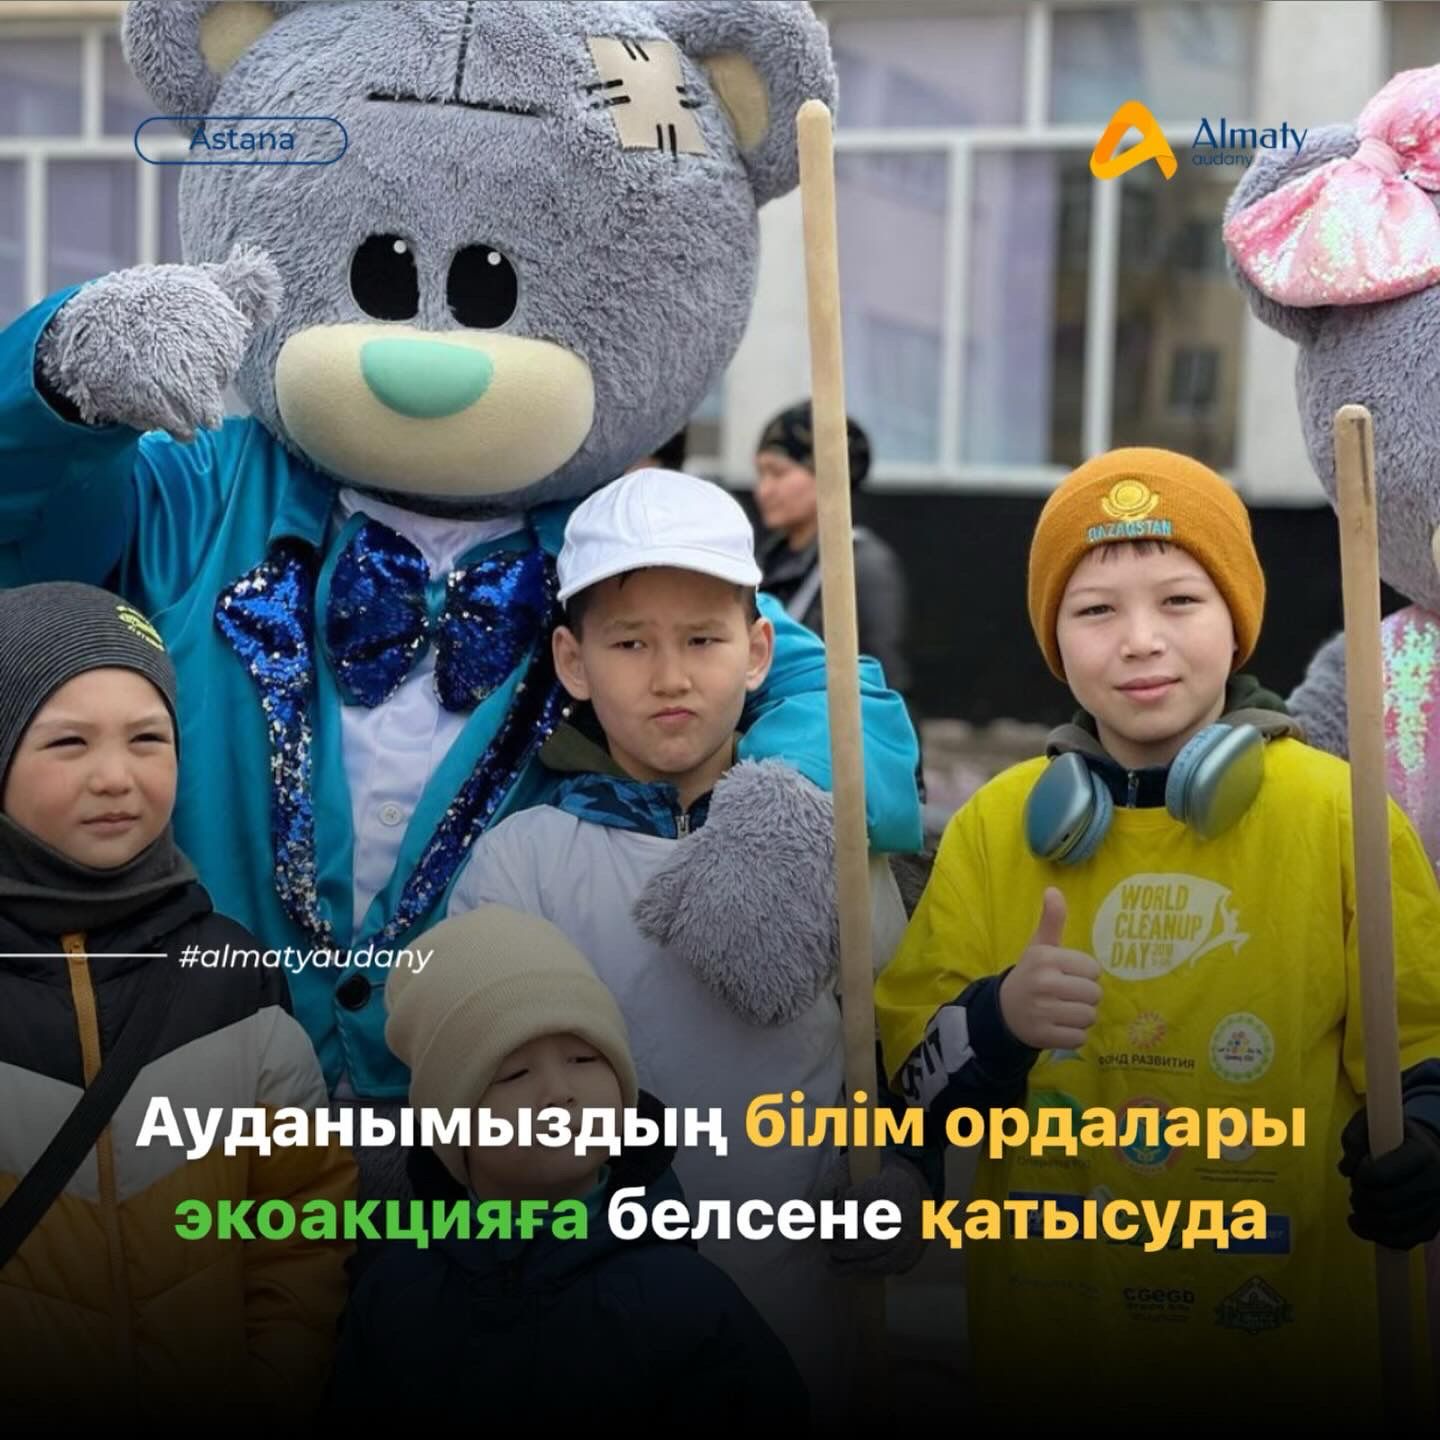 Школы района «Алматы» поддержали весеннюю экологическую акцию «Таза Қазақстан. Астана – образец чистоты и порядка» по санитарной очистке, благоустройству и озеленению города.